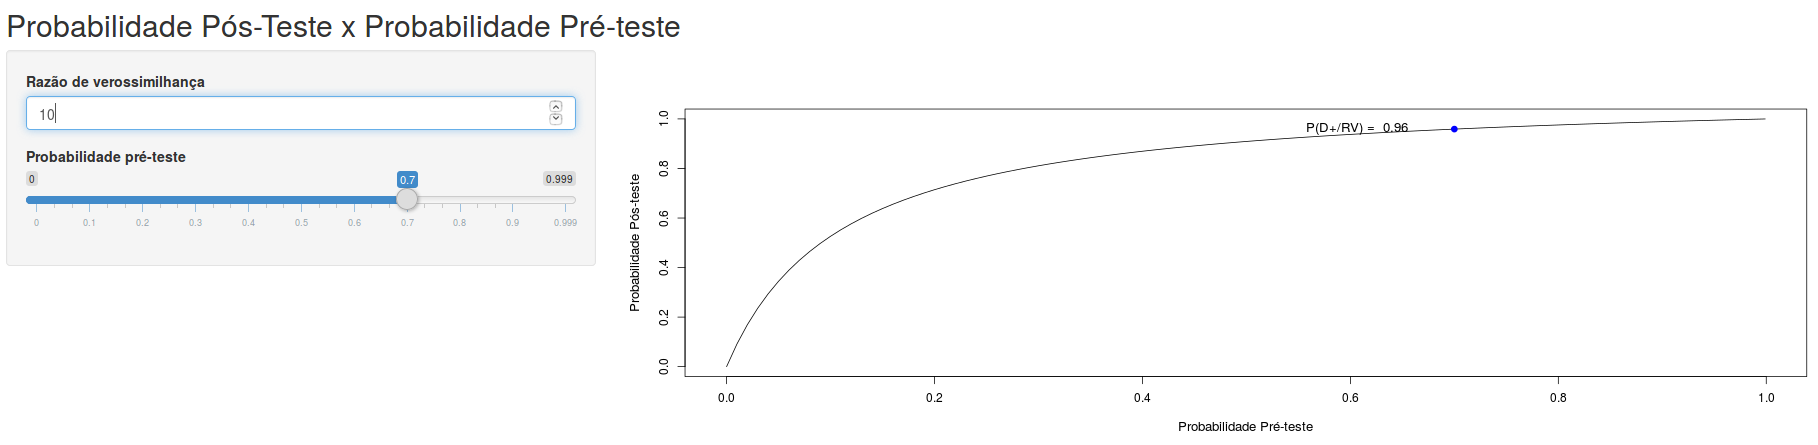 Quanto maior a razão de verossimilhança do resultado de um teste, mais a curva da probabilidade de doença pós-teste x prevalência se desloca para cima e para a esquerda.